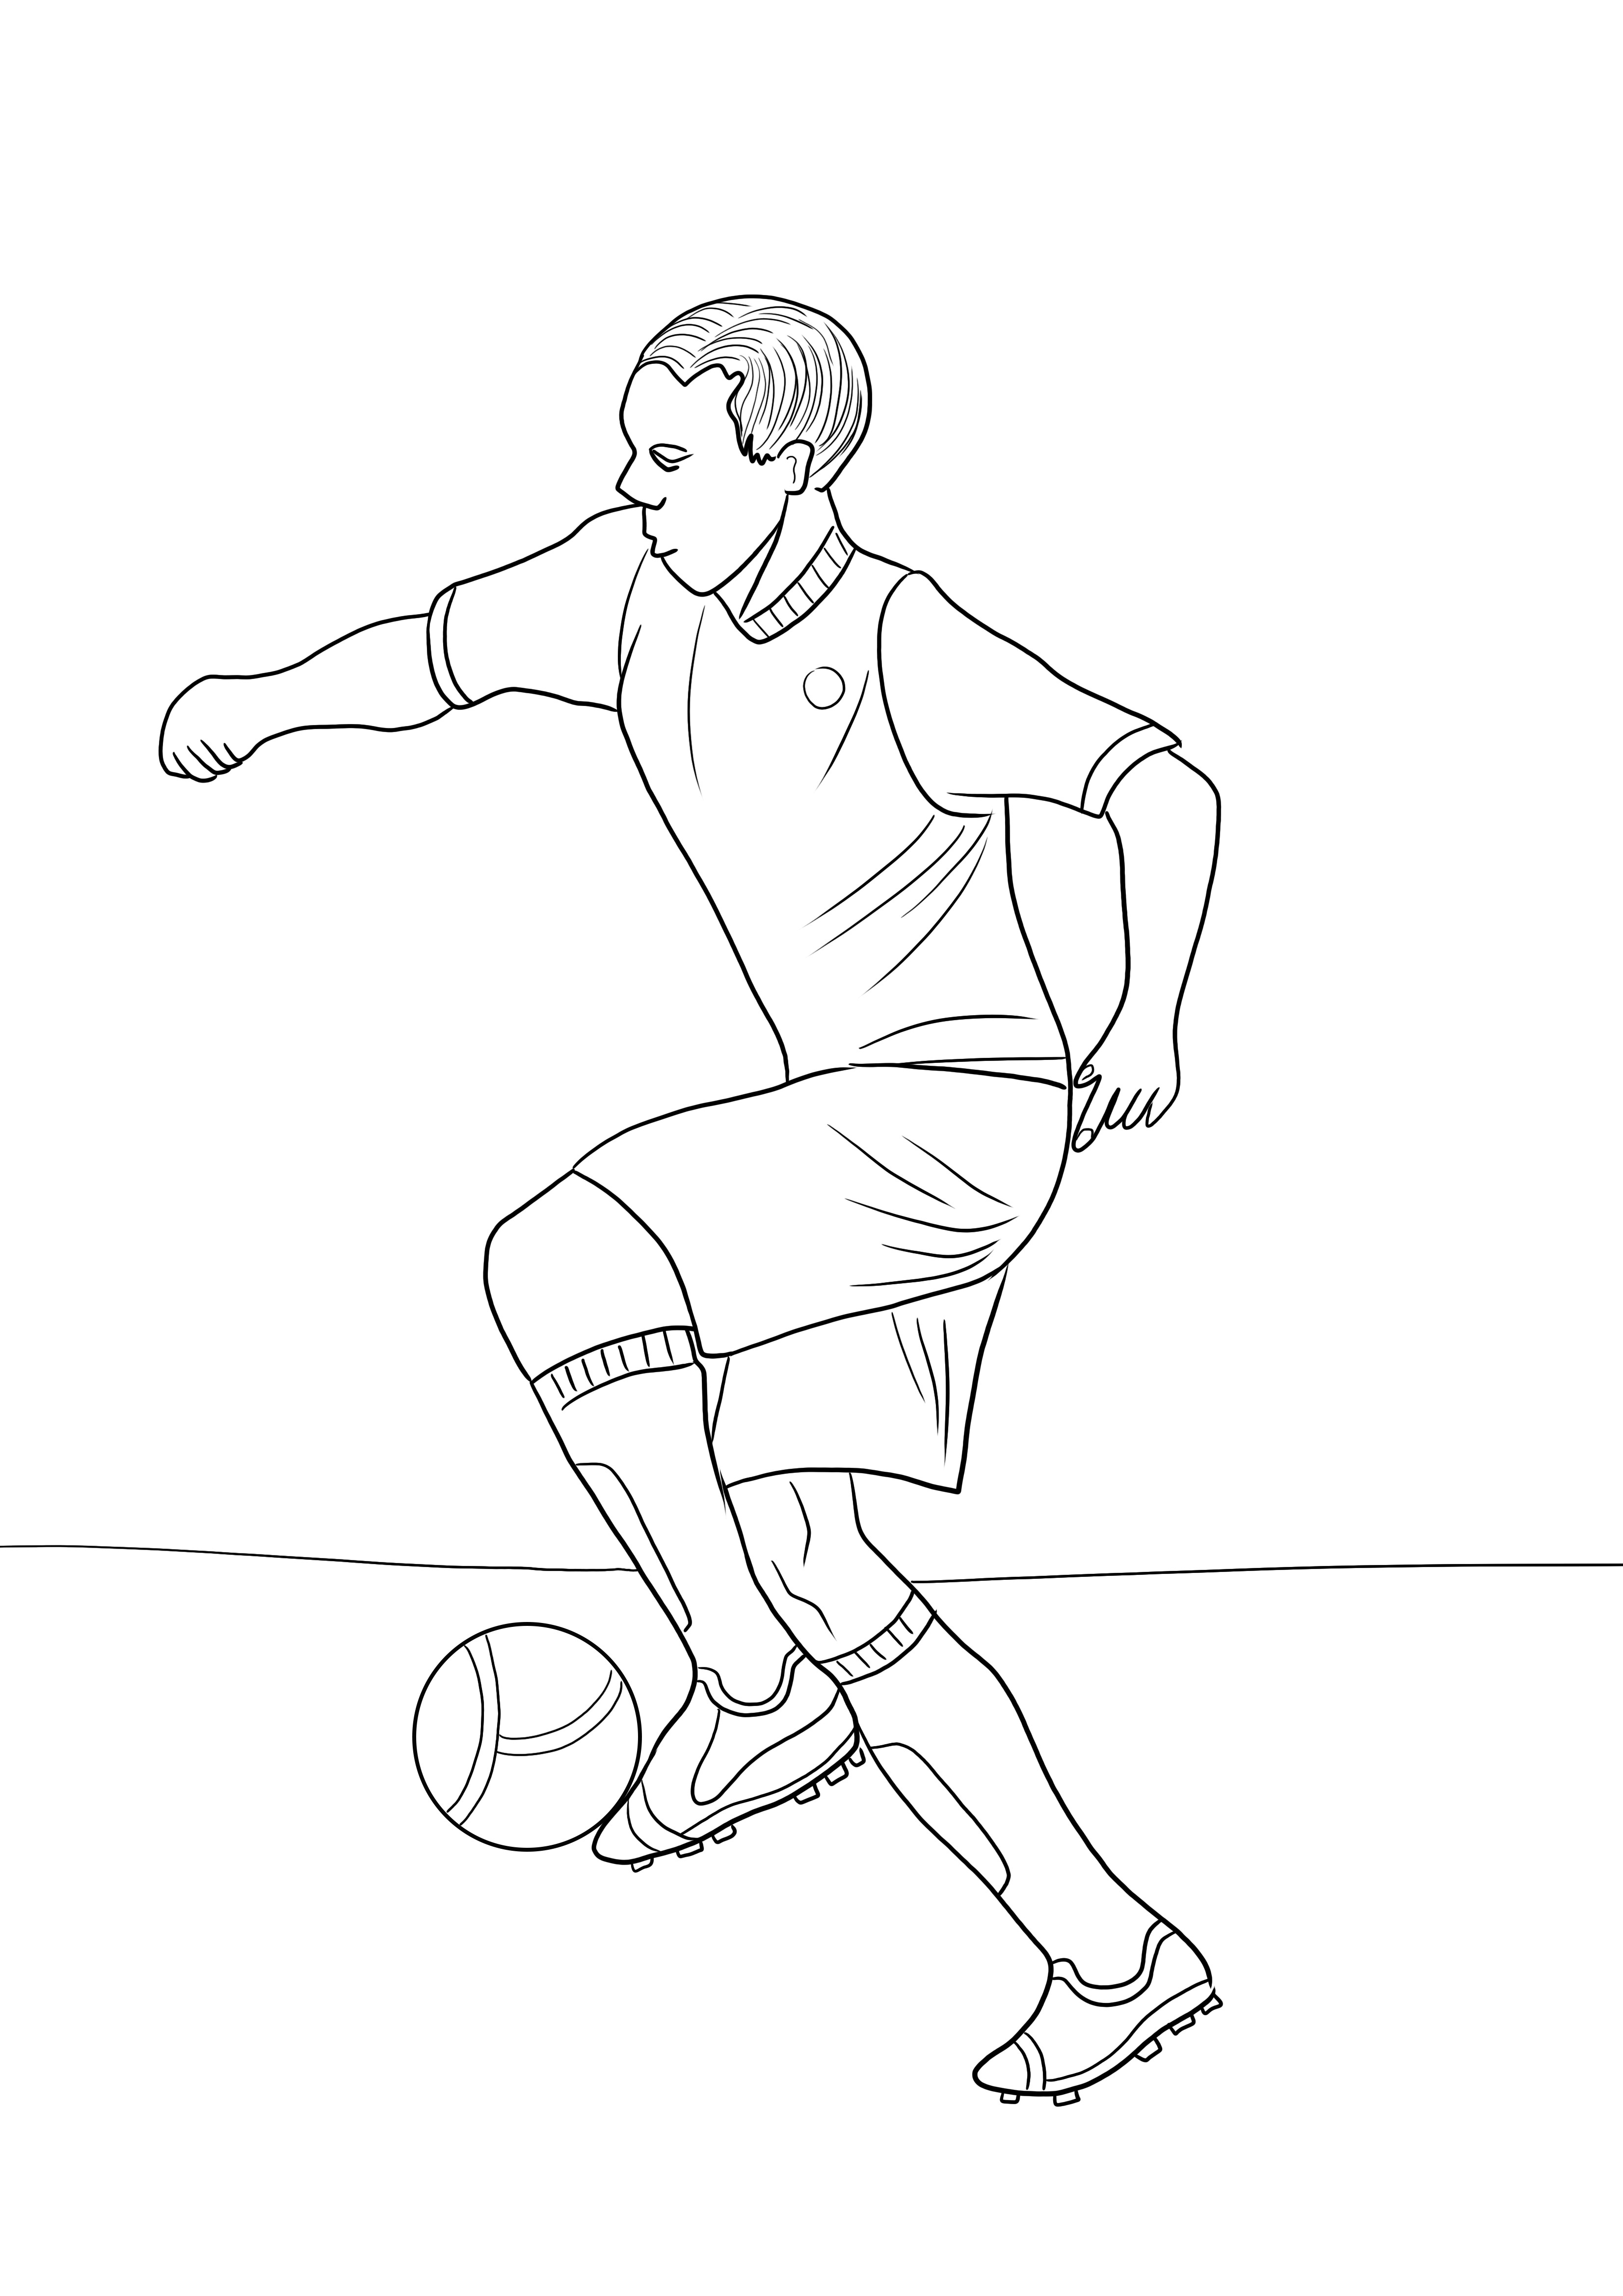 Gratis te downloaden en kleurenafbeelding van een voetballer om gemakkelijk over sportonderwerpen te leunen kleurplaat